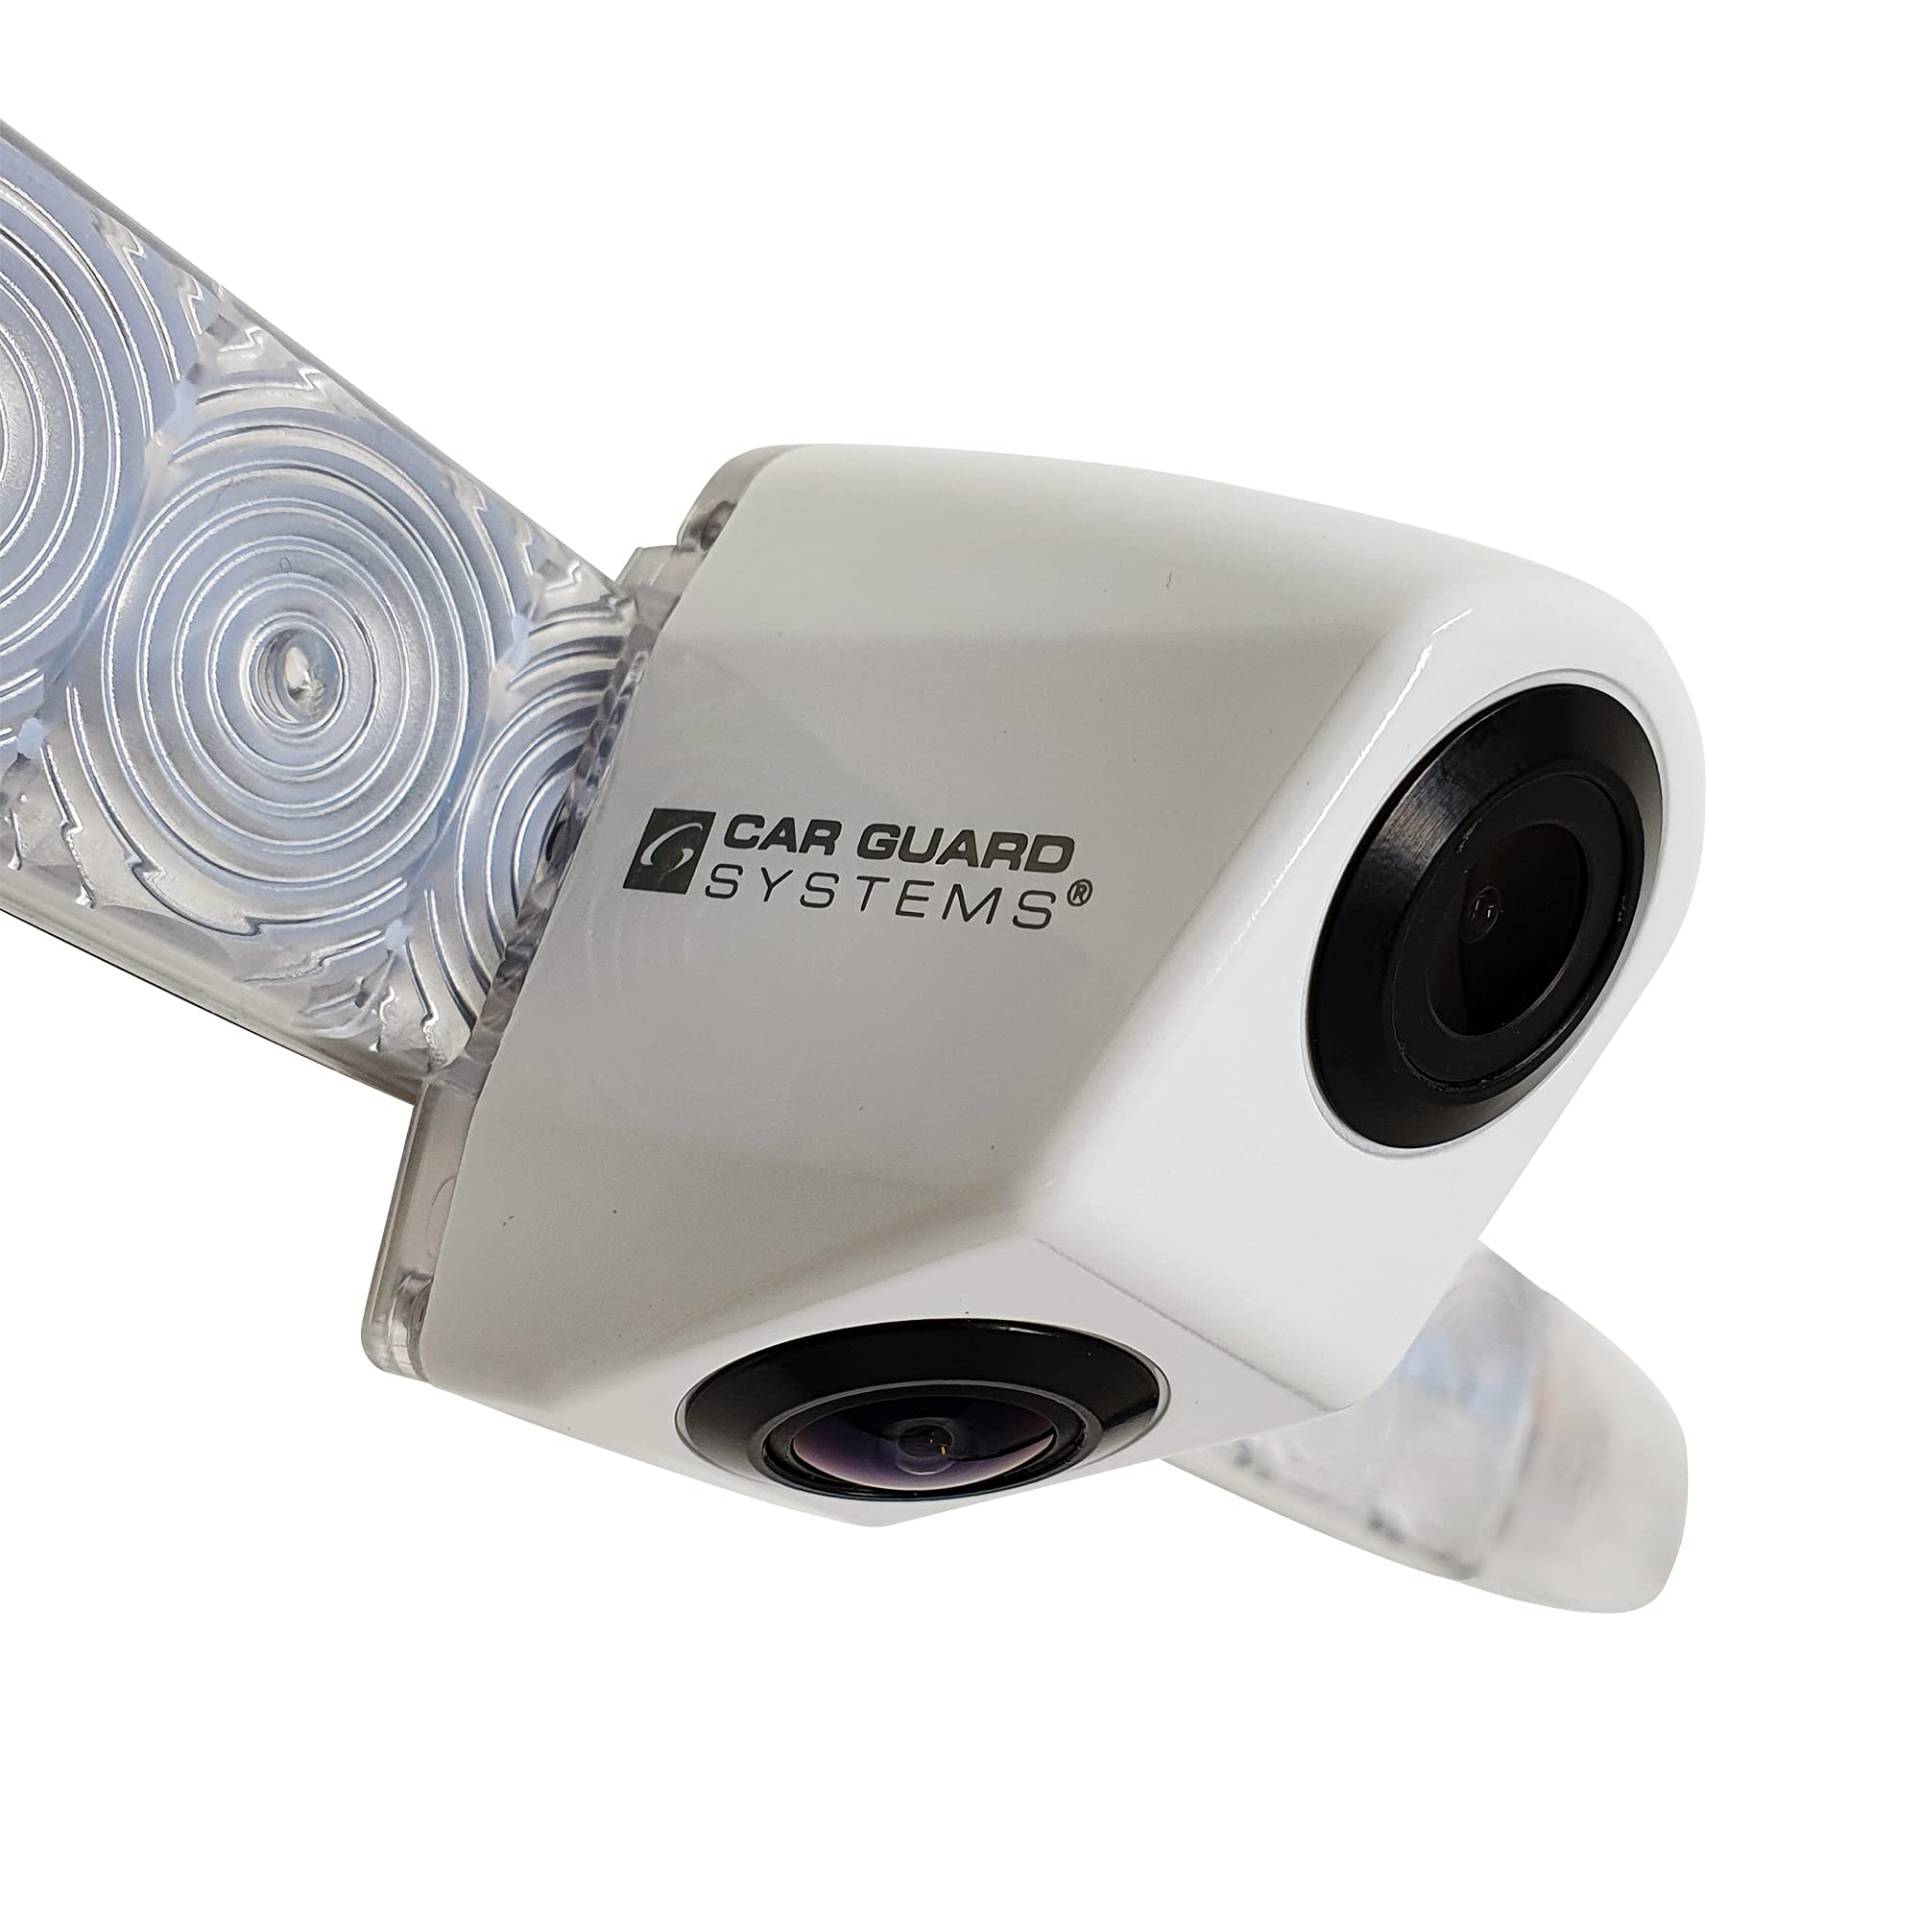 Doppel-Rückfahrkamera mit 3. Bremsleuchte RAV-DB2 in weiß von CARGUARD Systems mit 700TVL für Navis, Moniceiver und Monitore mit 2 Kameraeingängen für Fahrzeuge mit Dometic-Kameravorrüstung von CARGUARD SYSTEMS